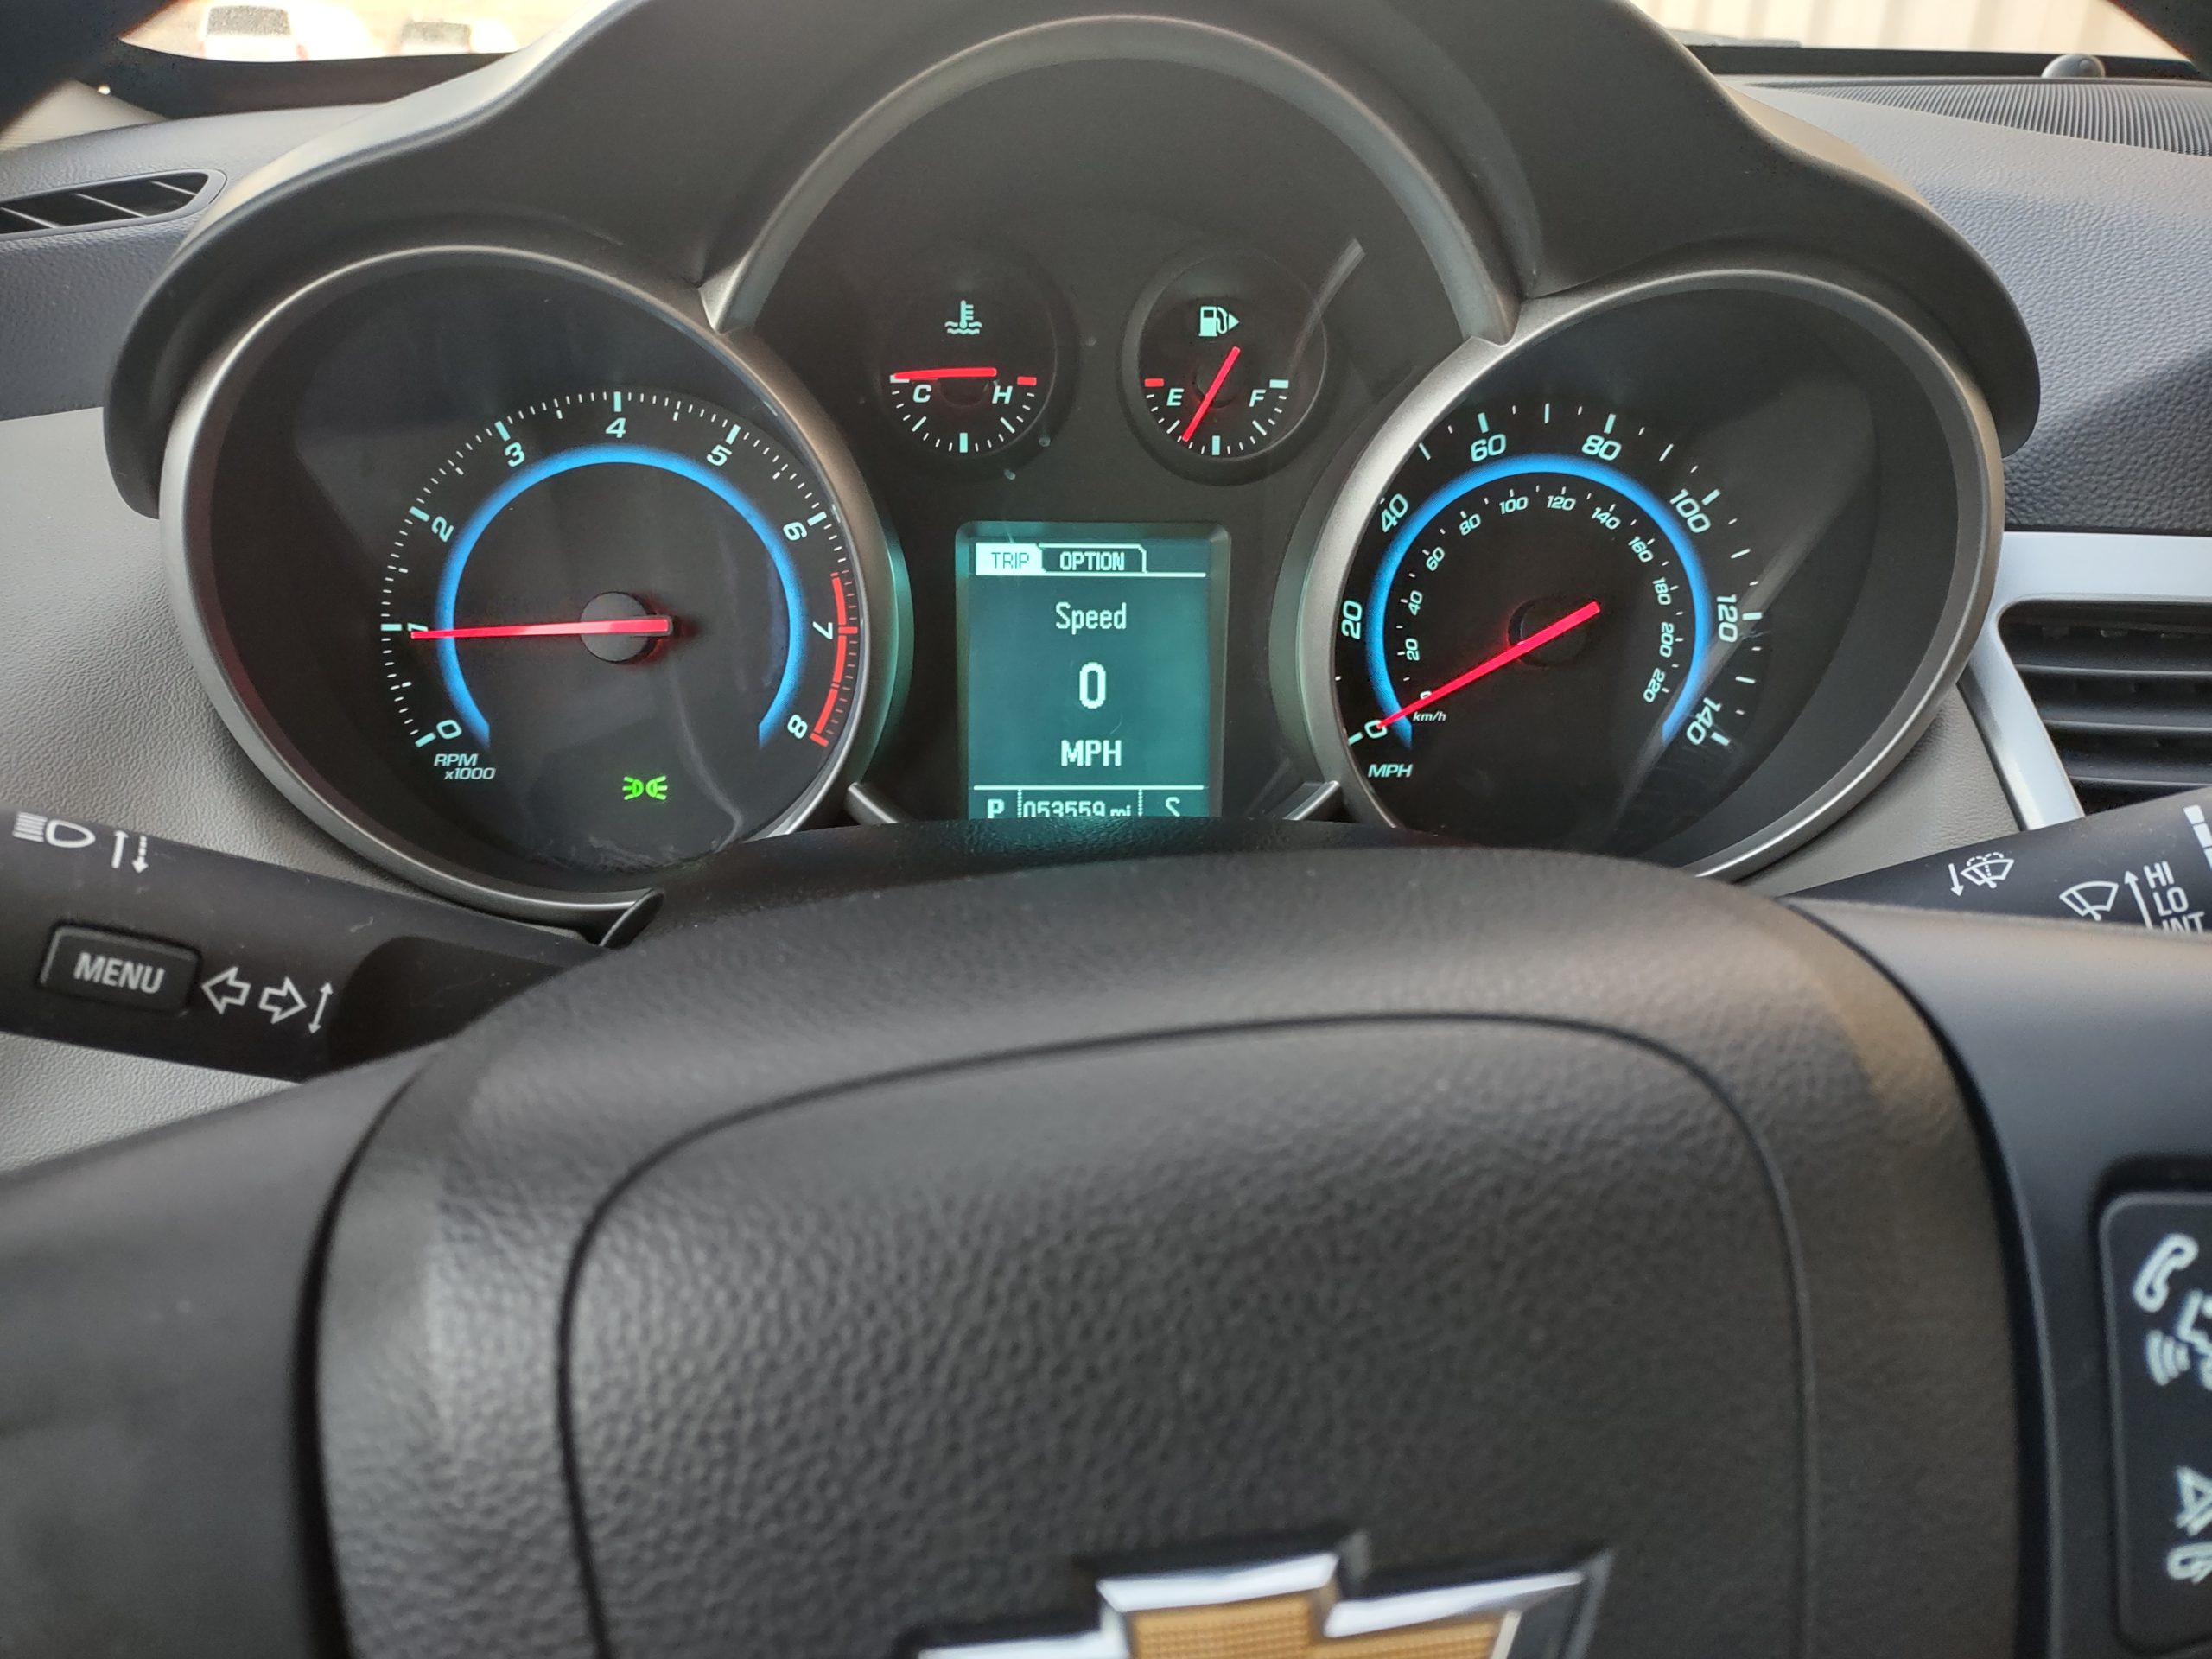 Used 2016 Chevrolet Cruze LS Sedan for sale in 